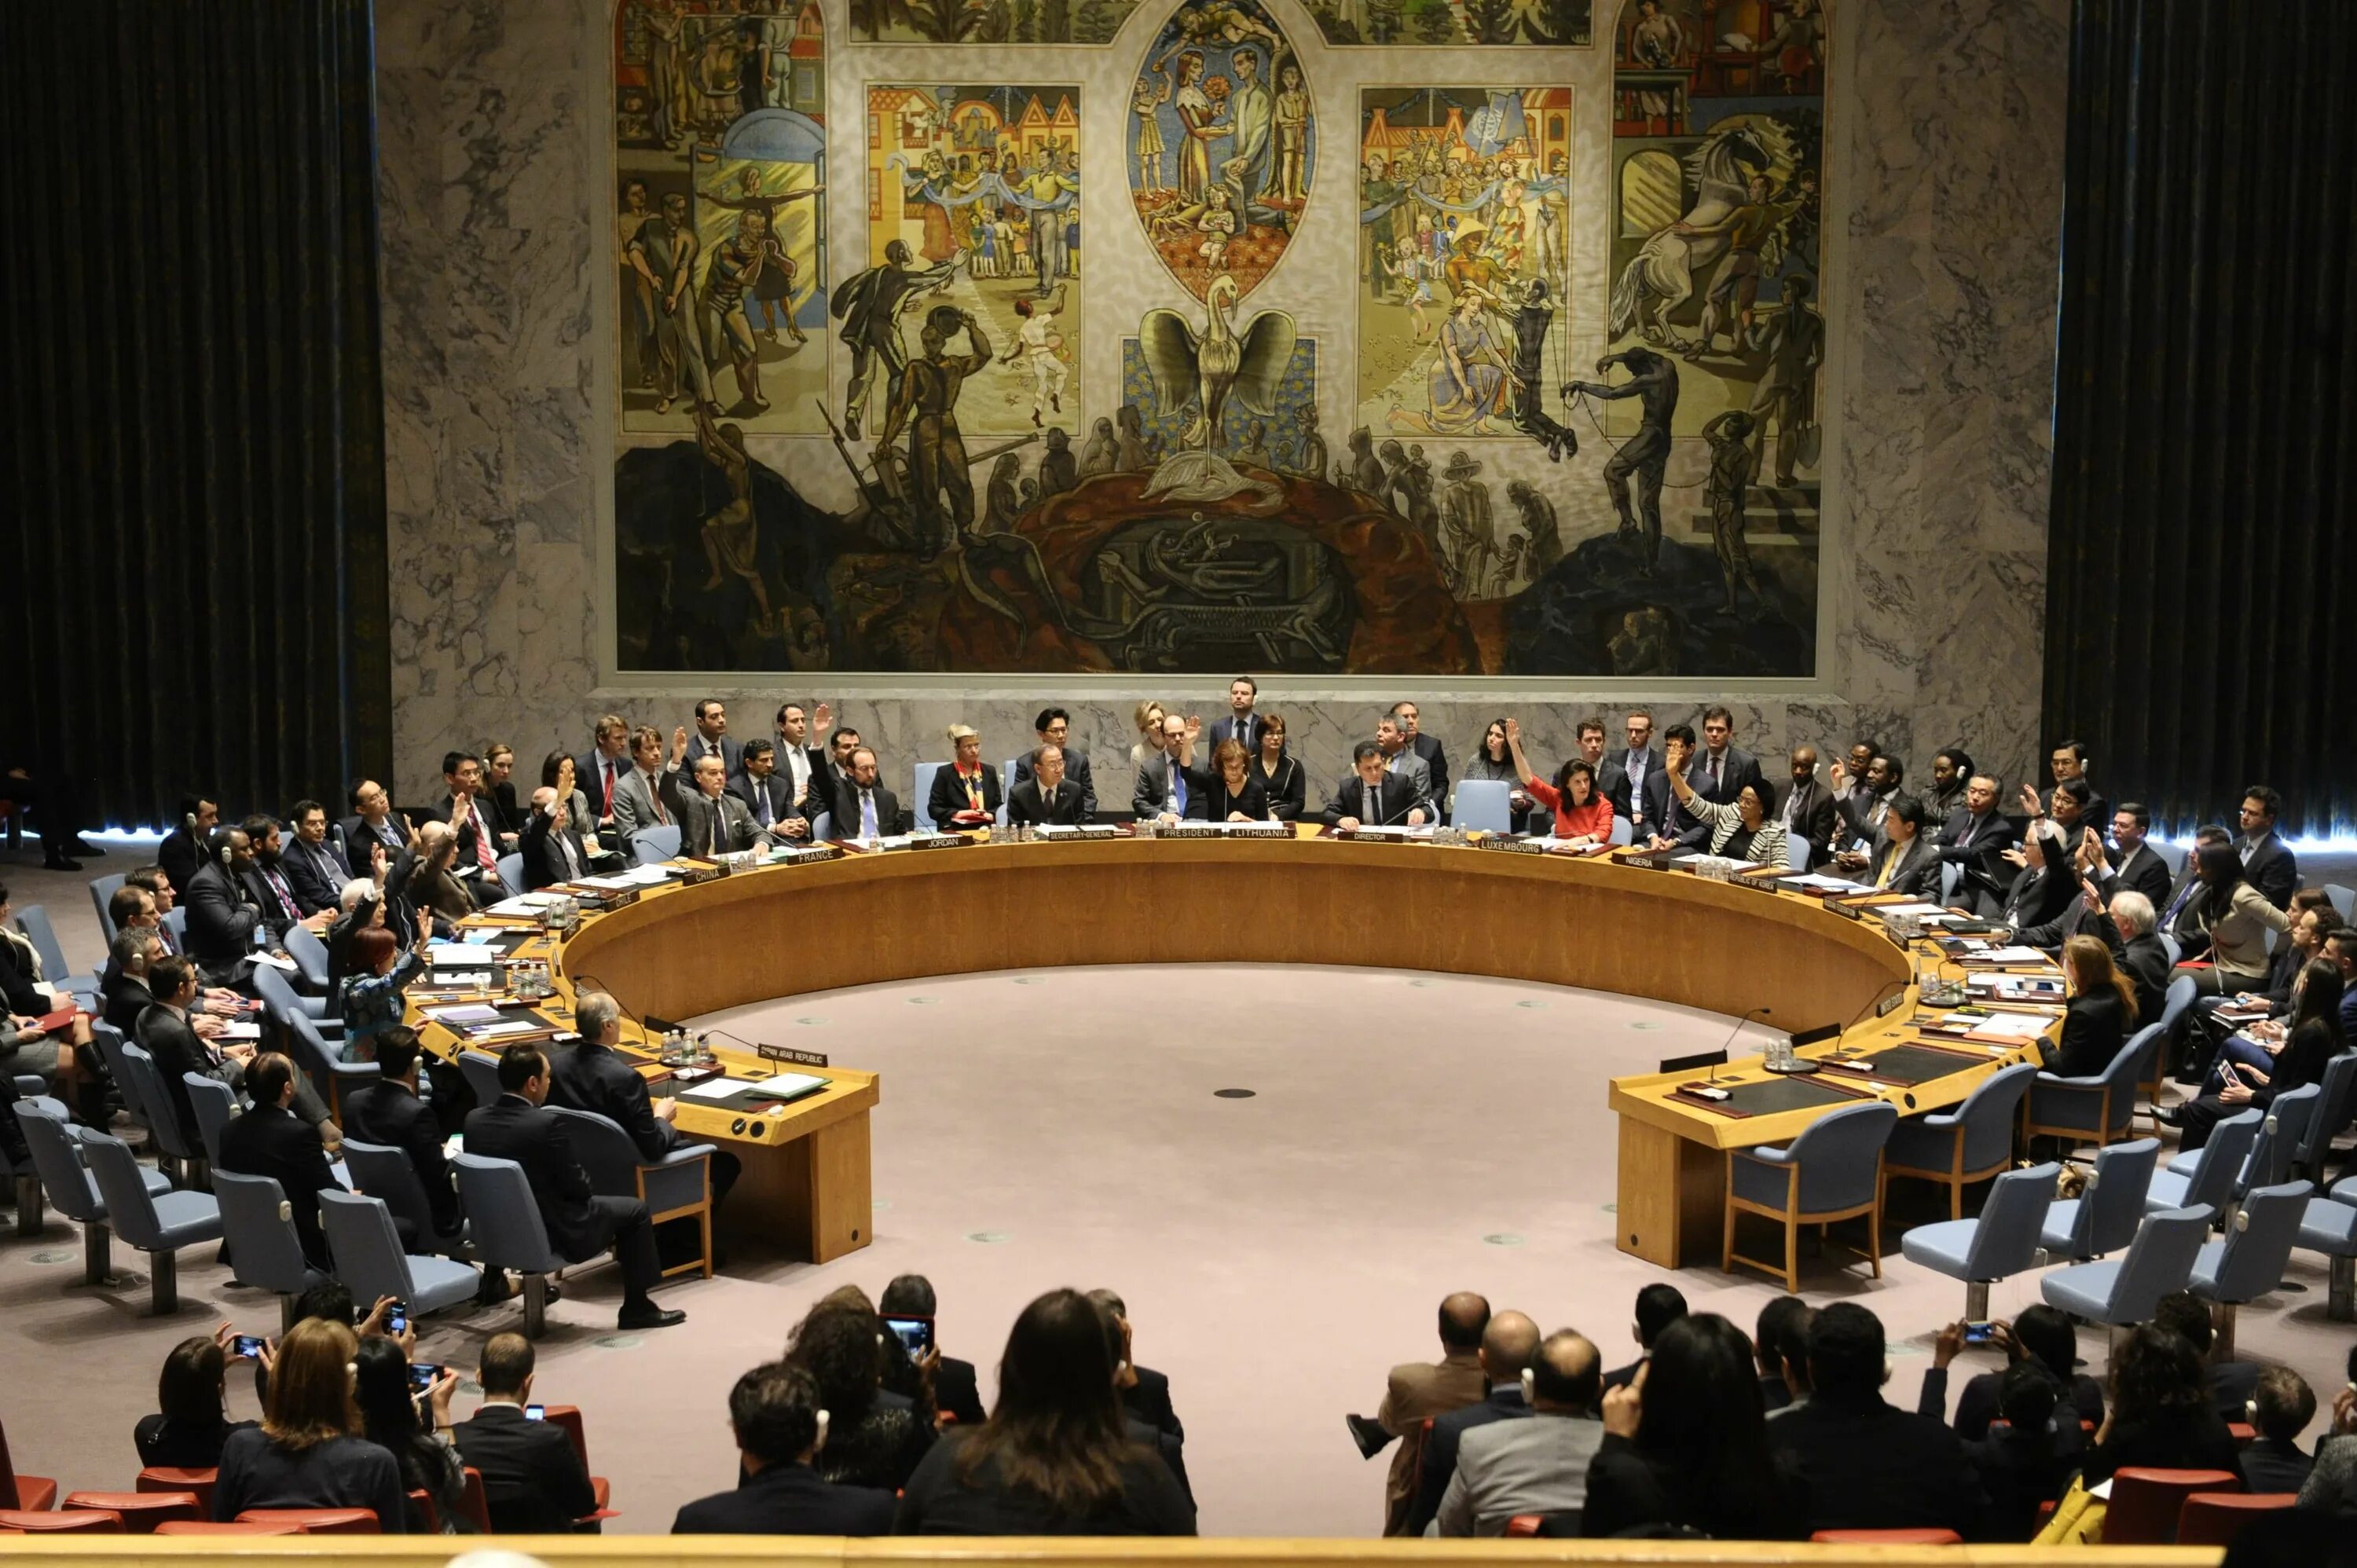 Оон обсудили. Зал совета безопасности ООН. Зал заседаний совета безопасности ООН. Зал заседаний Совбеза ООН. Заседание совета безопасности ООН.